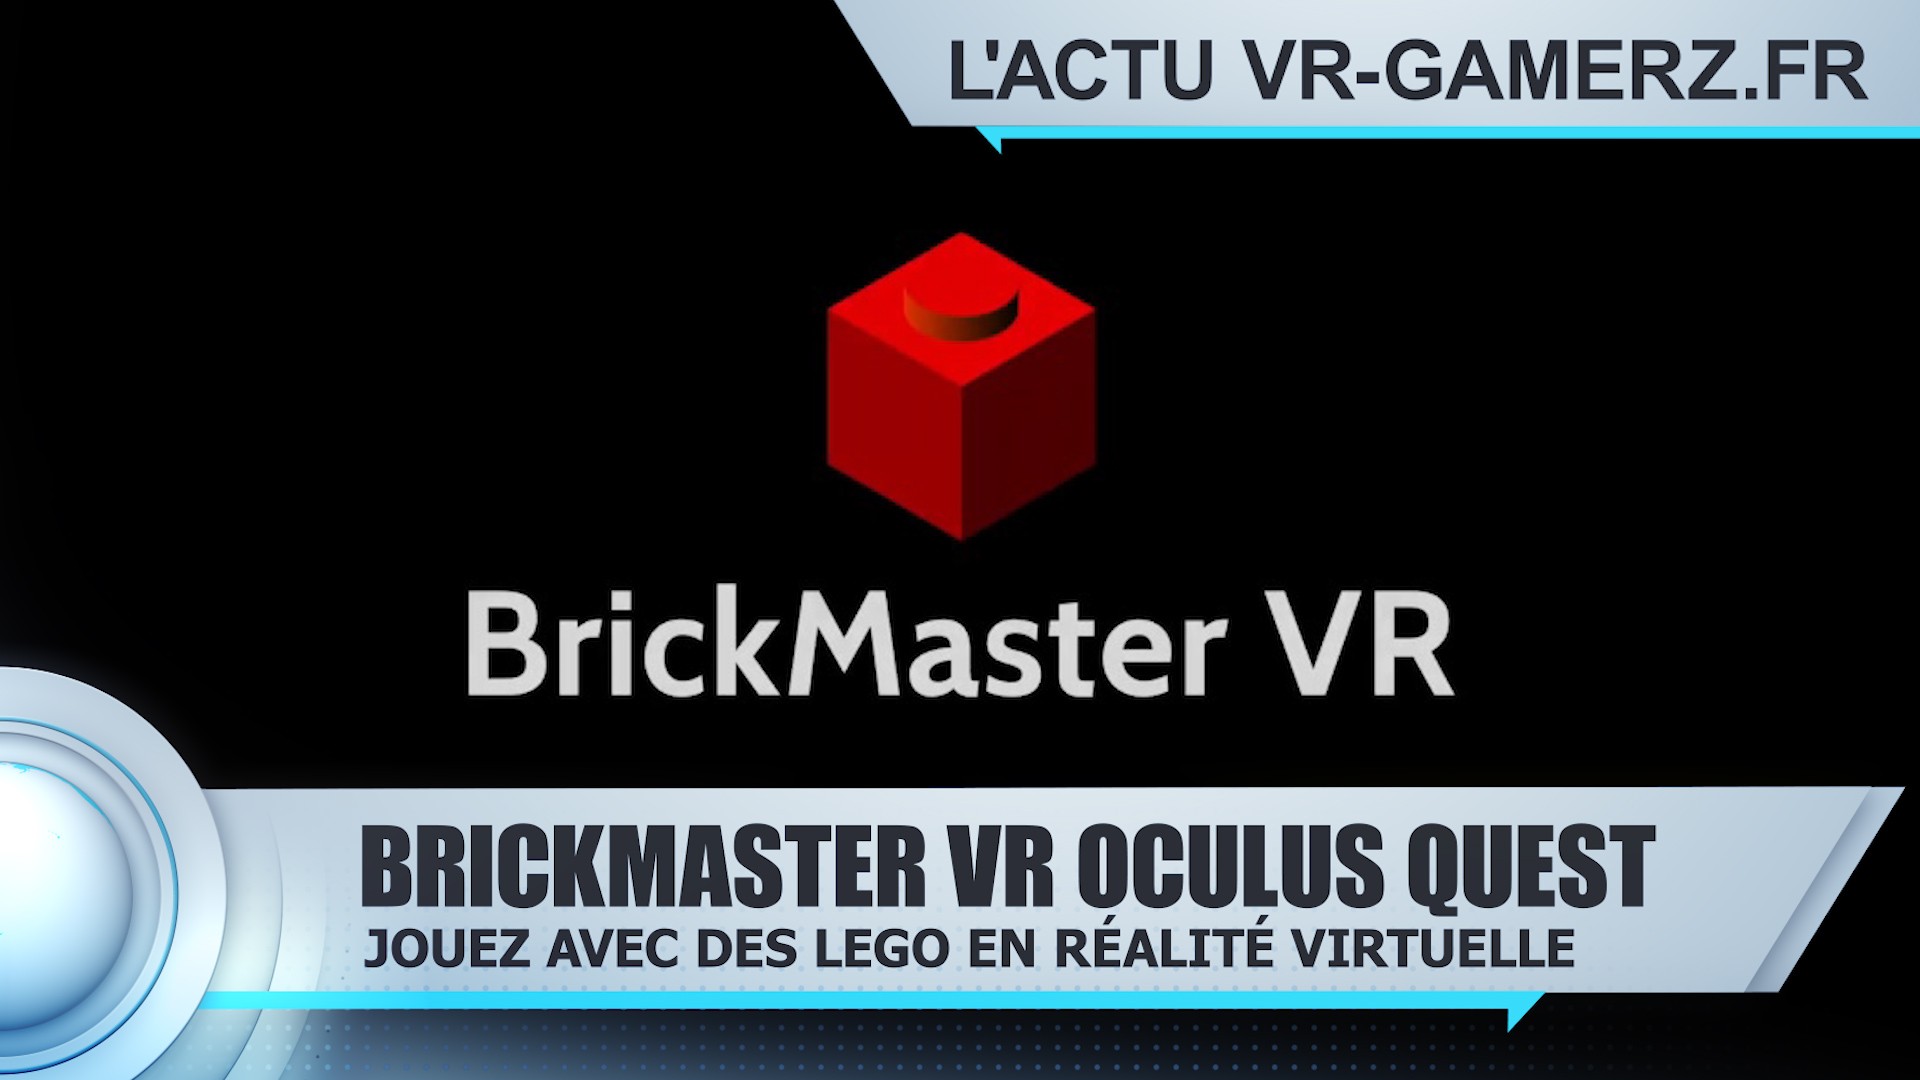 BrickMaster VR Oculus quest